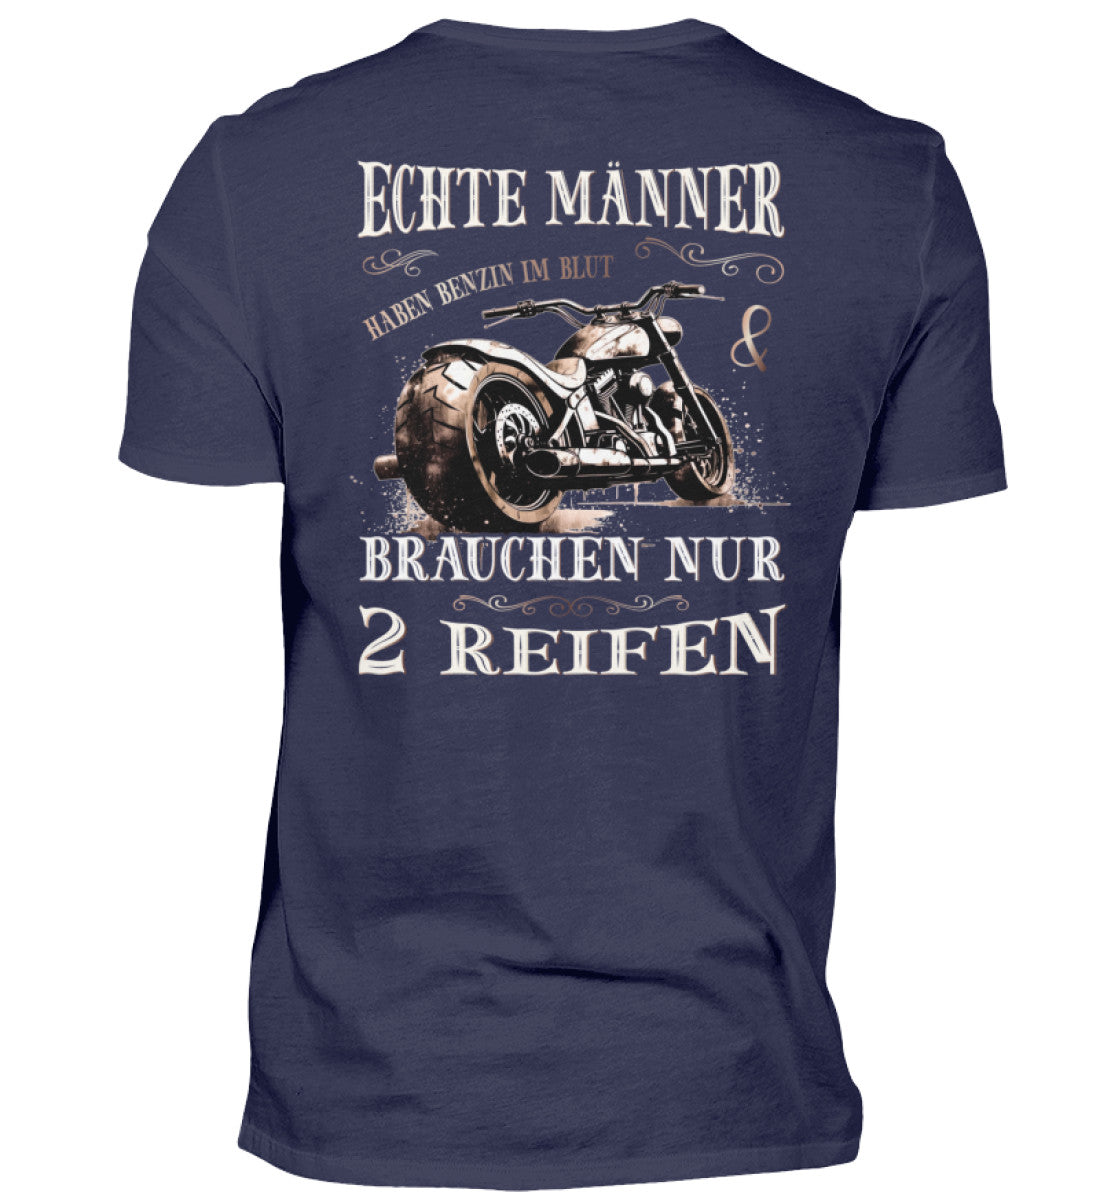 Ein T-Shirt für Motorradfahrer von Wingbikers mit dem Aufdruck, Echte Männer brauchen nur 2 Reifen, als Back Print, in navy blau.